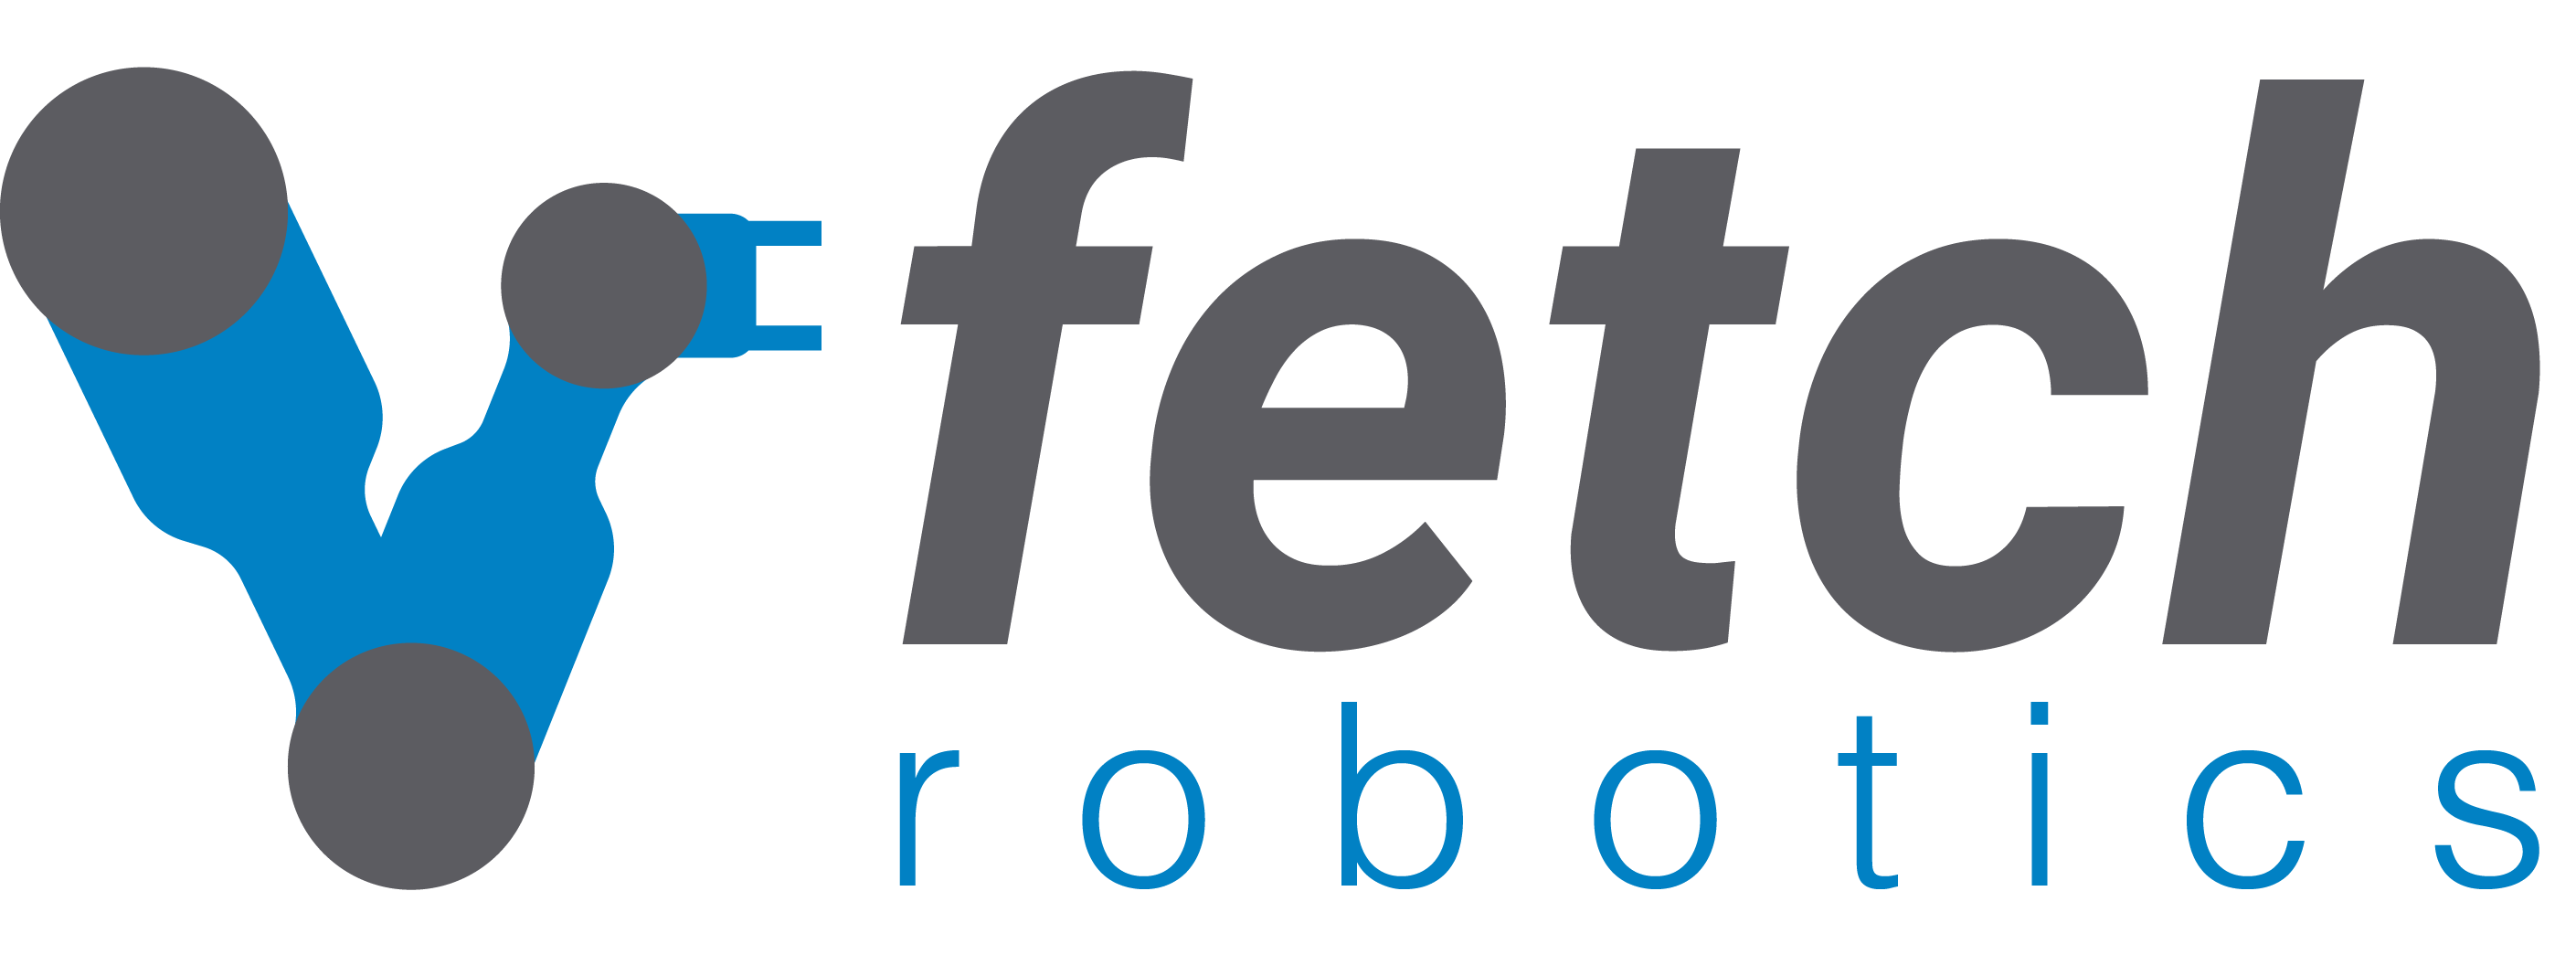 Fetch Logo - Autonomous Mobile Robots That Improve Productivity | Fetch Robotics